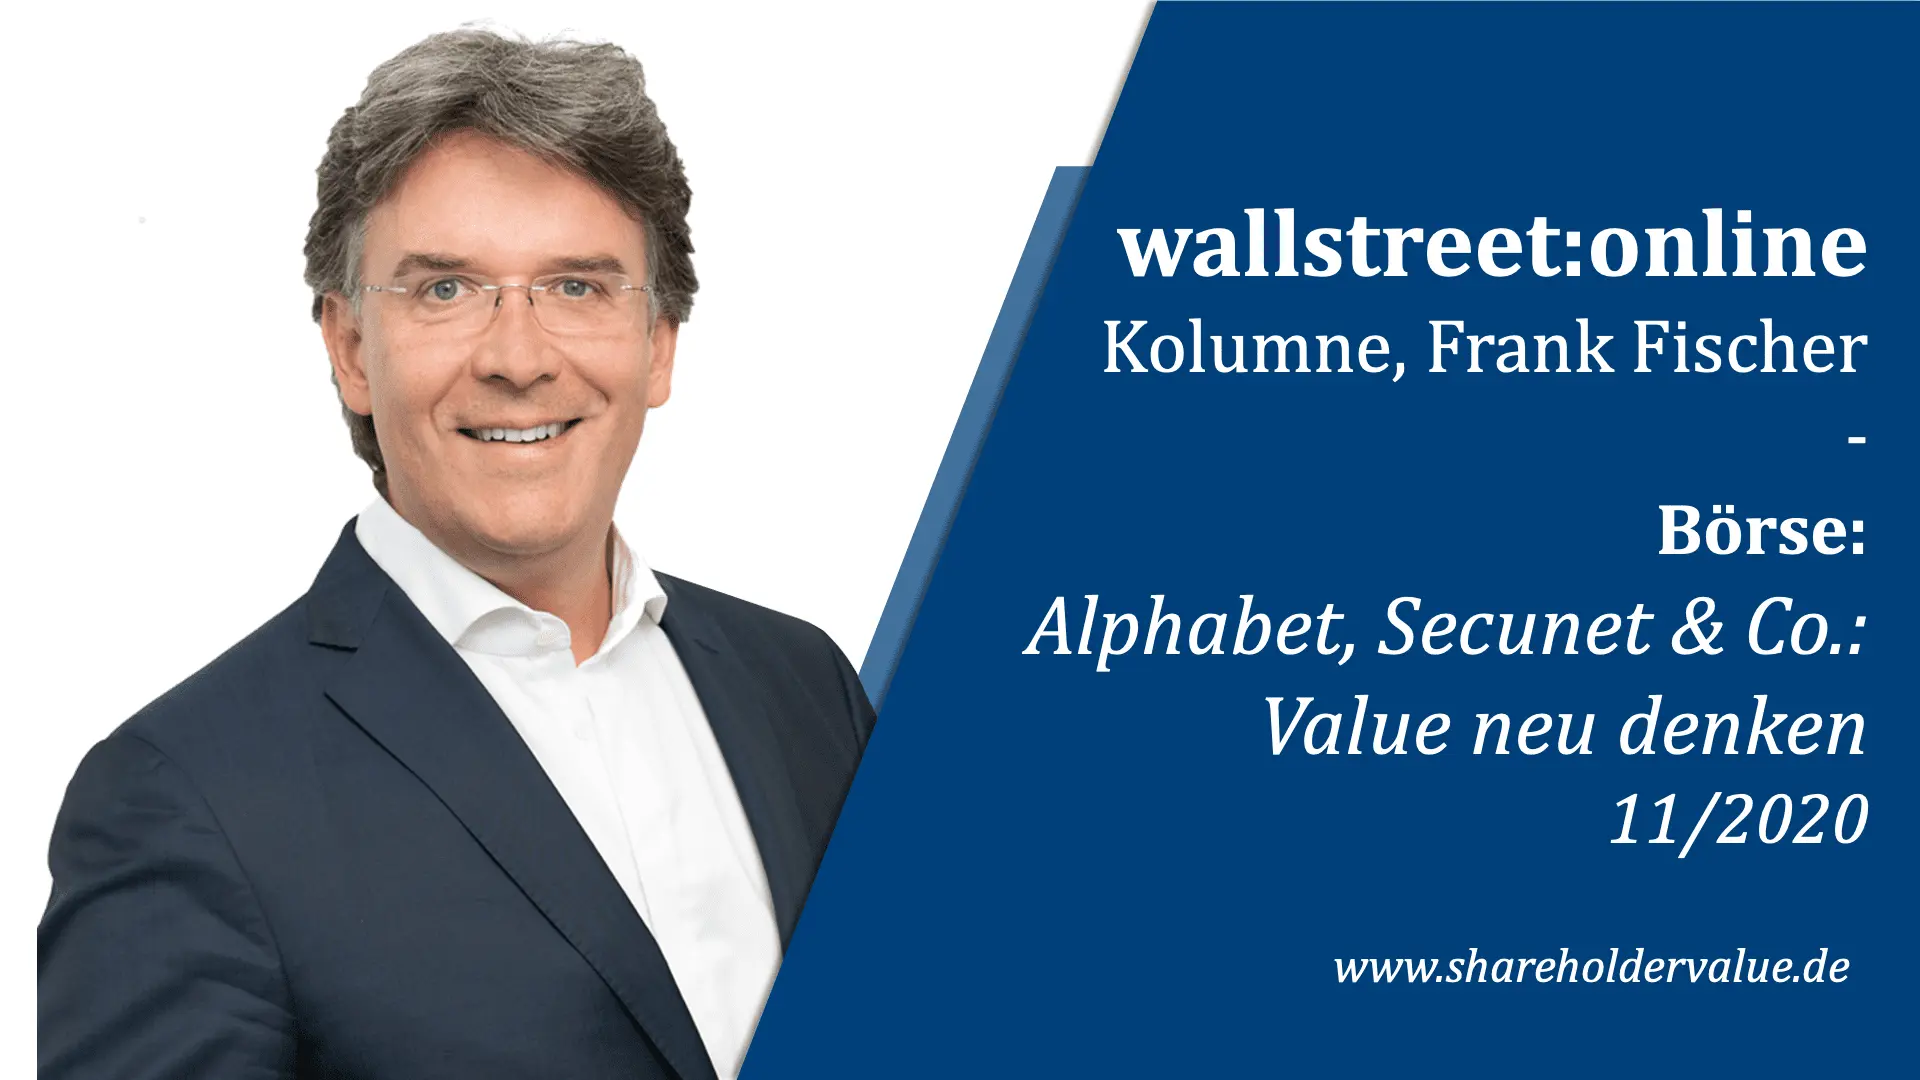 Alphabet_Secunet_und_Co_Value_neu_denken_Frank_Fischer_Kolumne